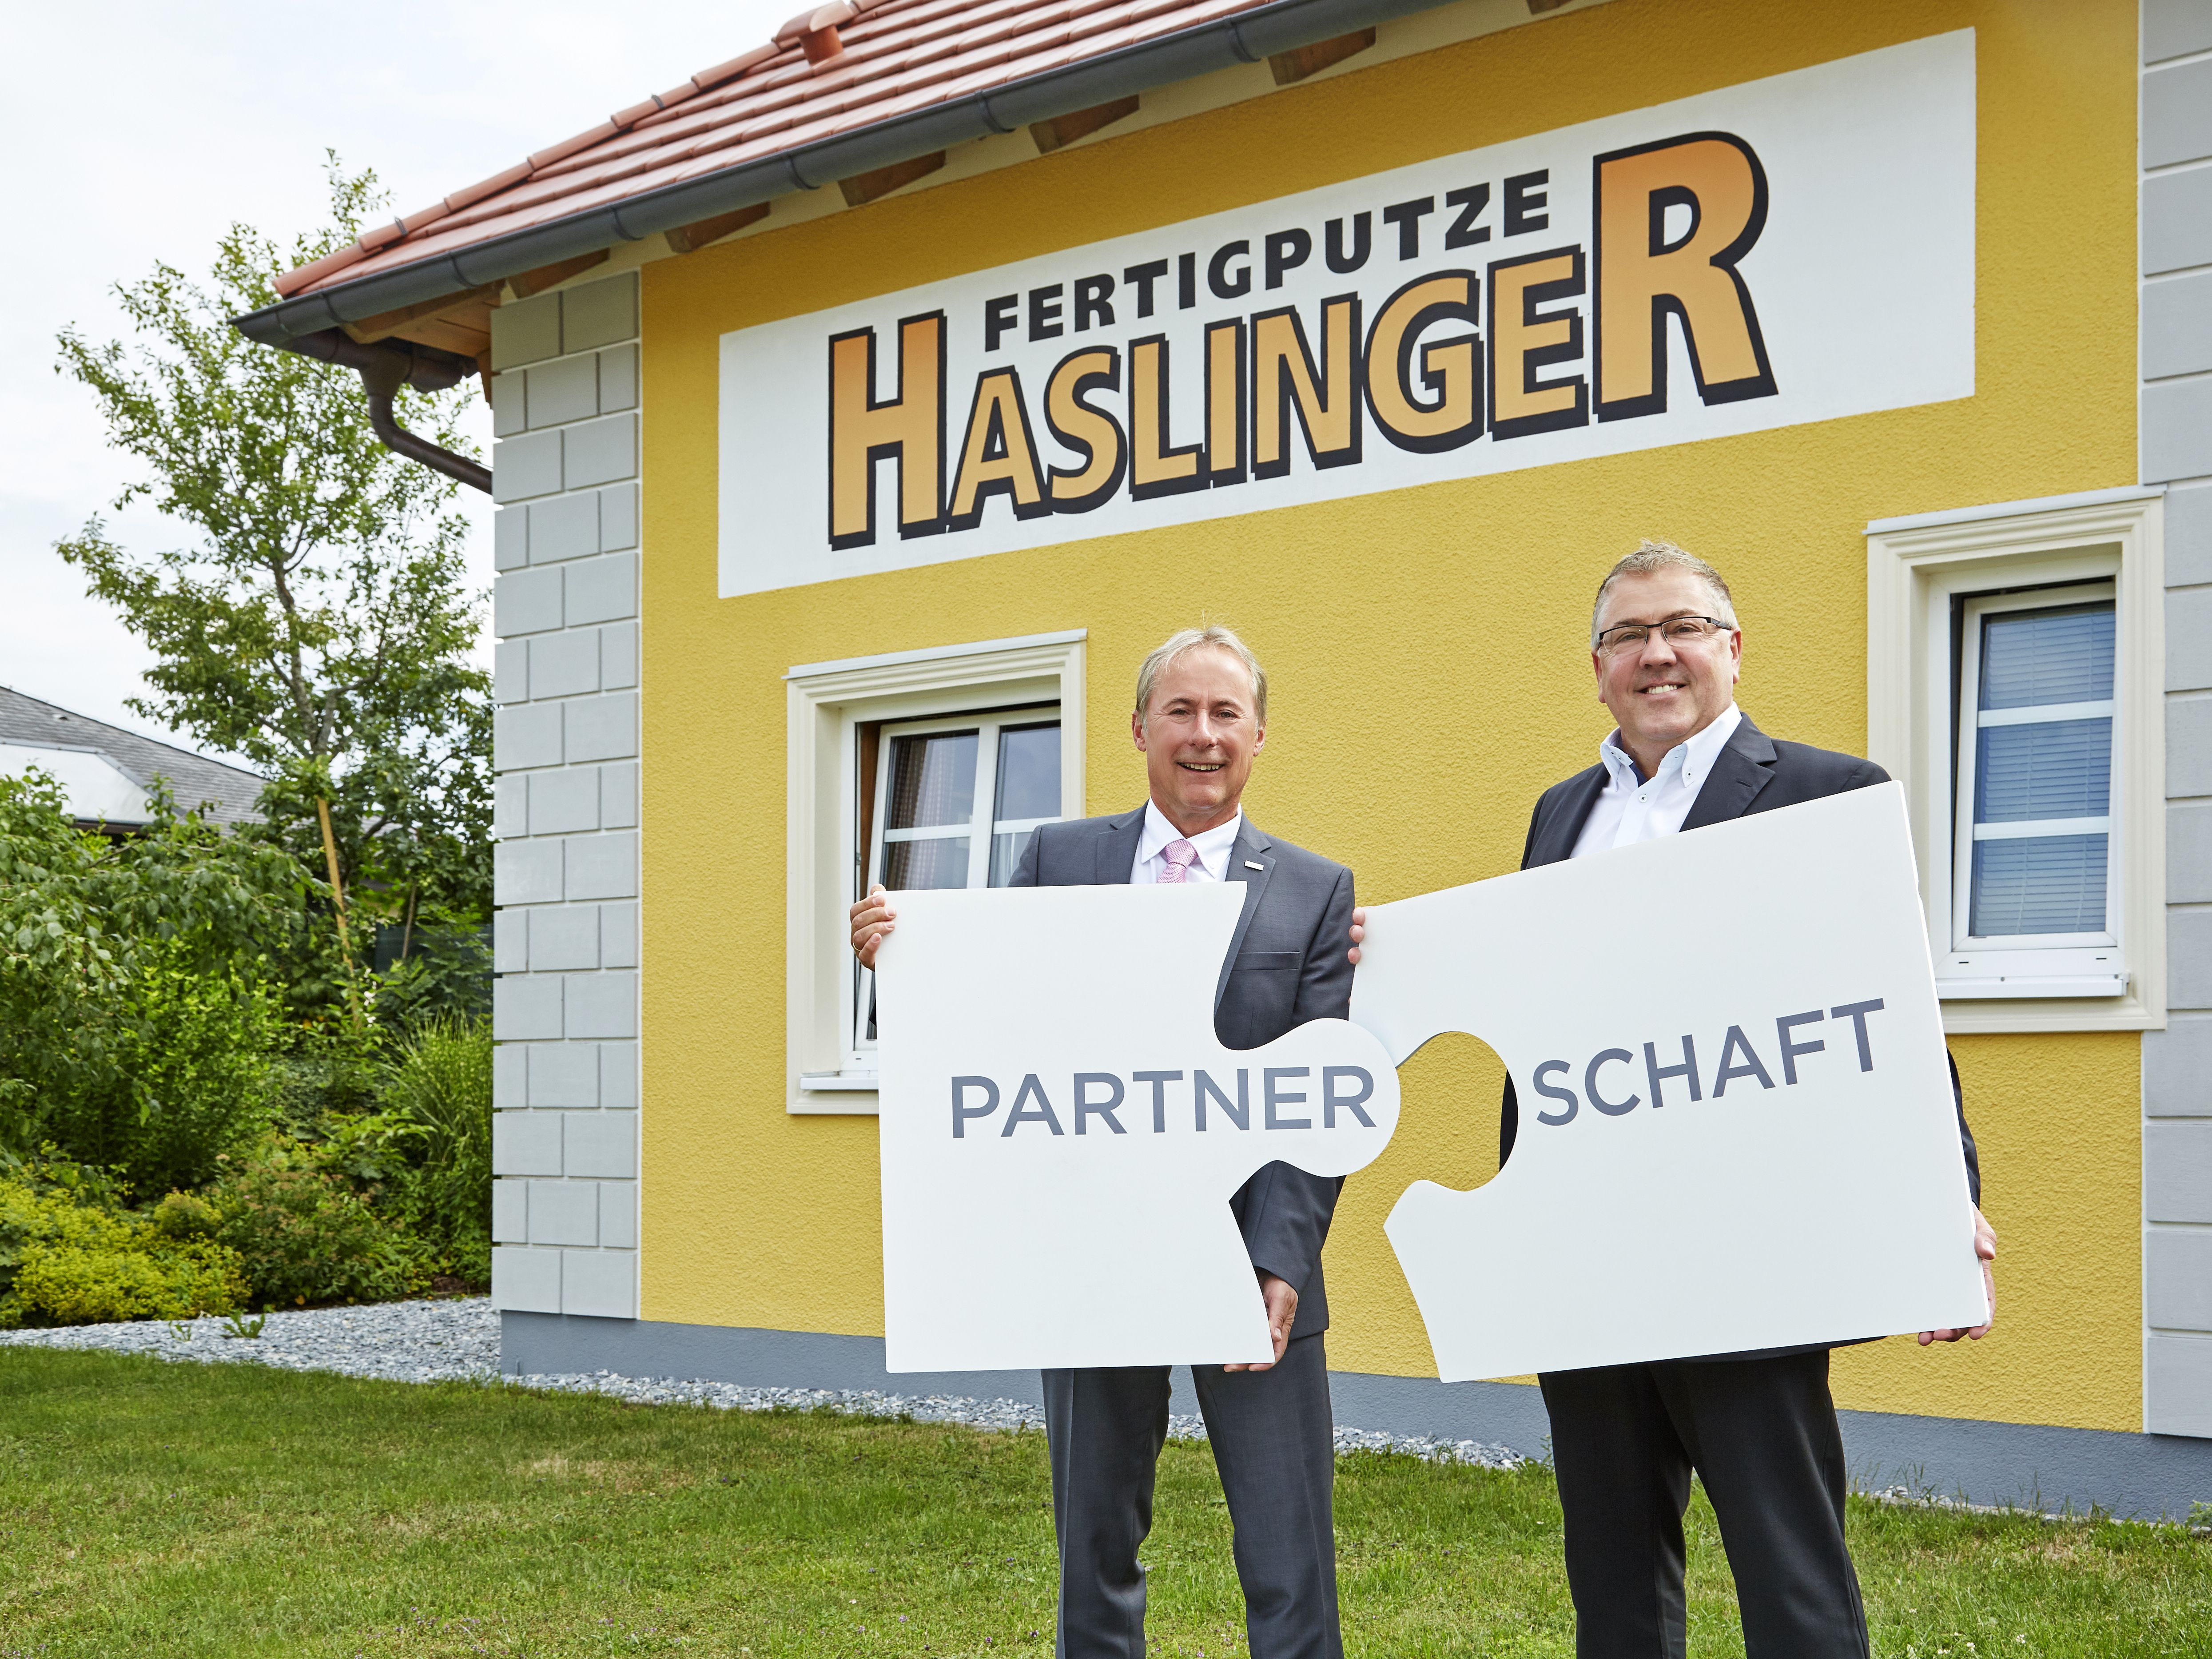 Die Finanzpartnerschaft von Dr. Johann Steiner, Direktor der VKB-Bank Ried, (l.) und Georg Haslinger (r.) ist so qualitativ und nachhaltig wie die Arbeit von Fertigputze Haslinger.